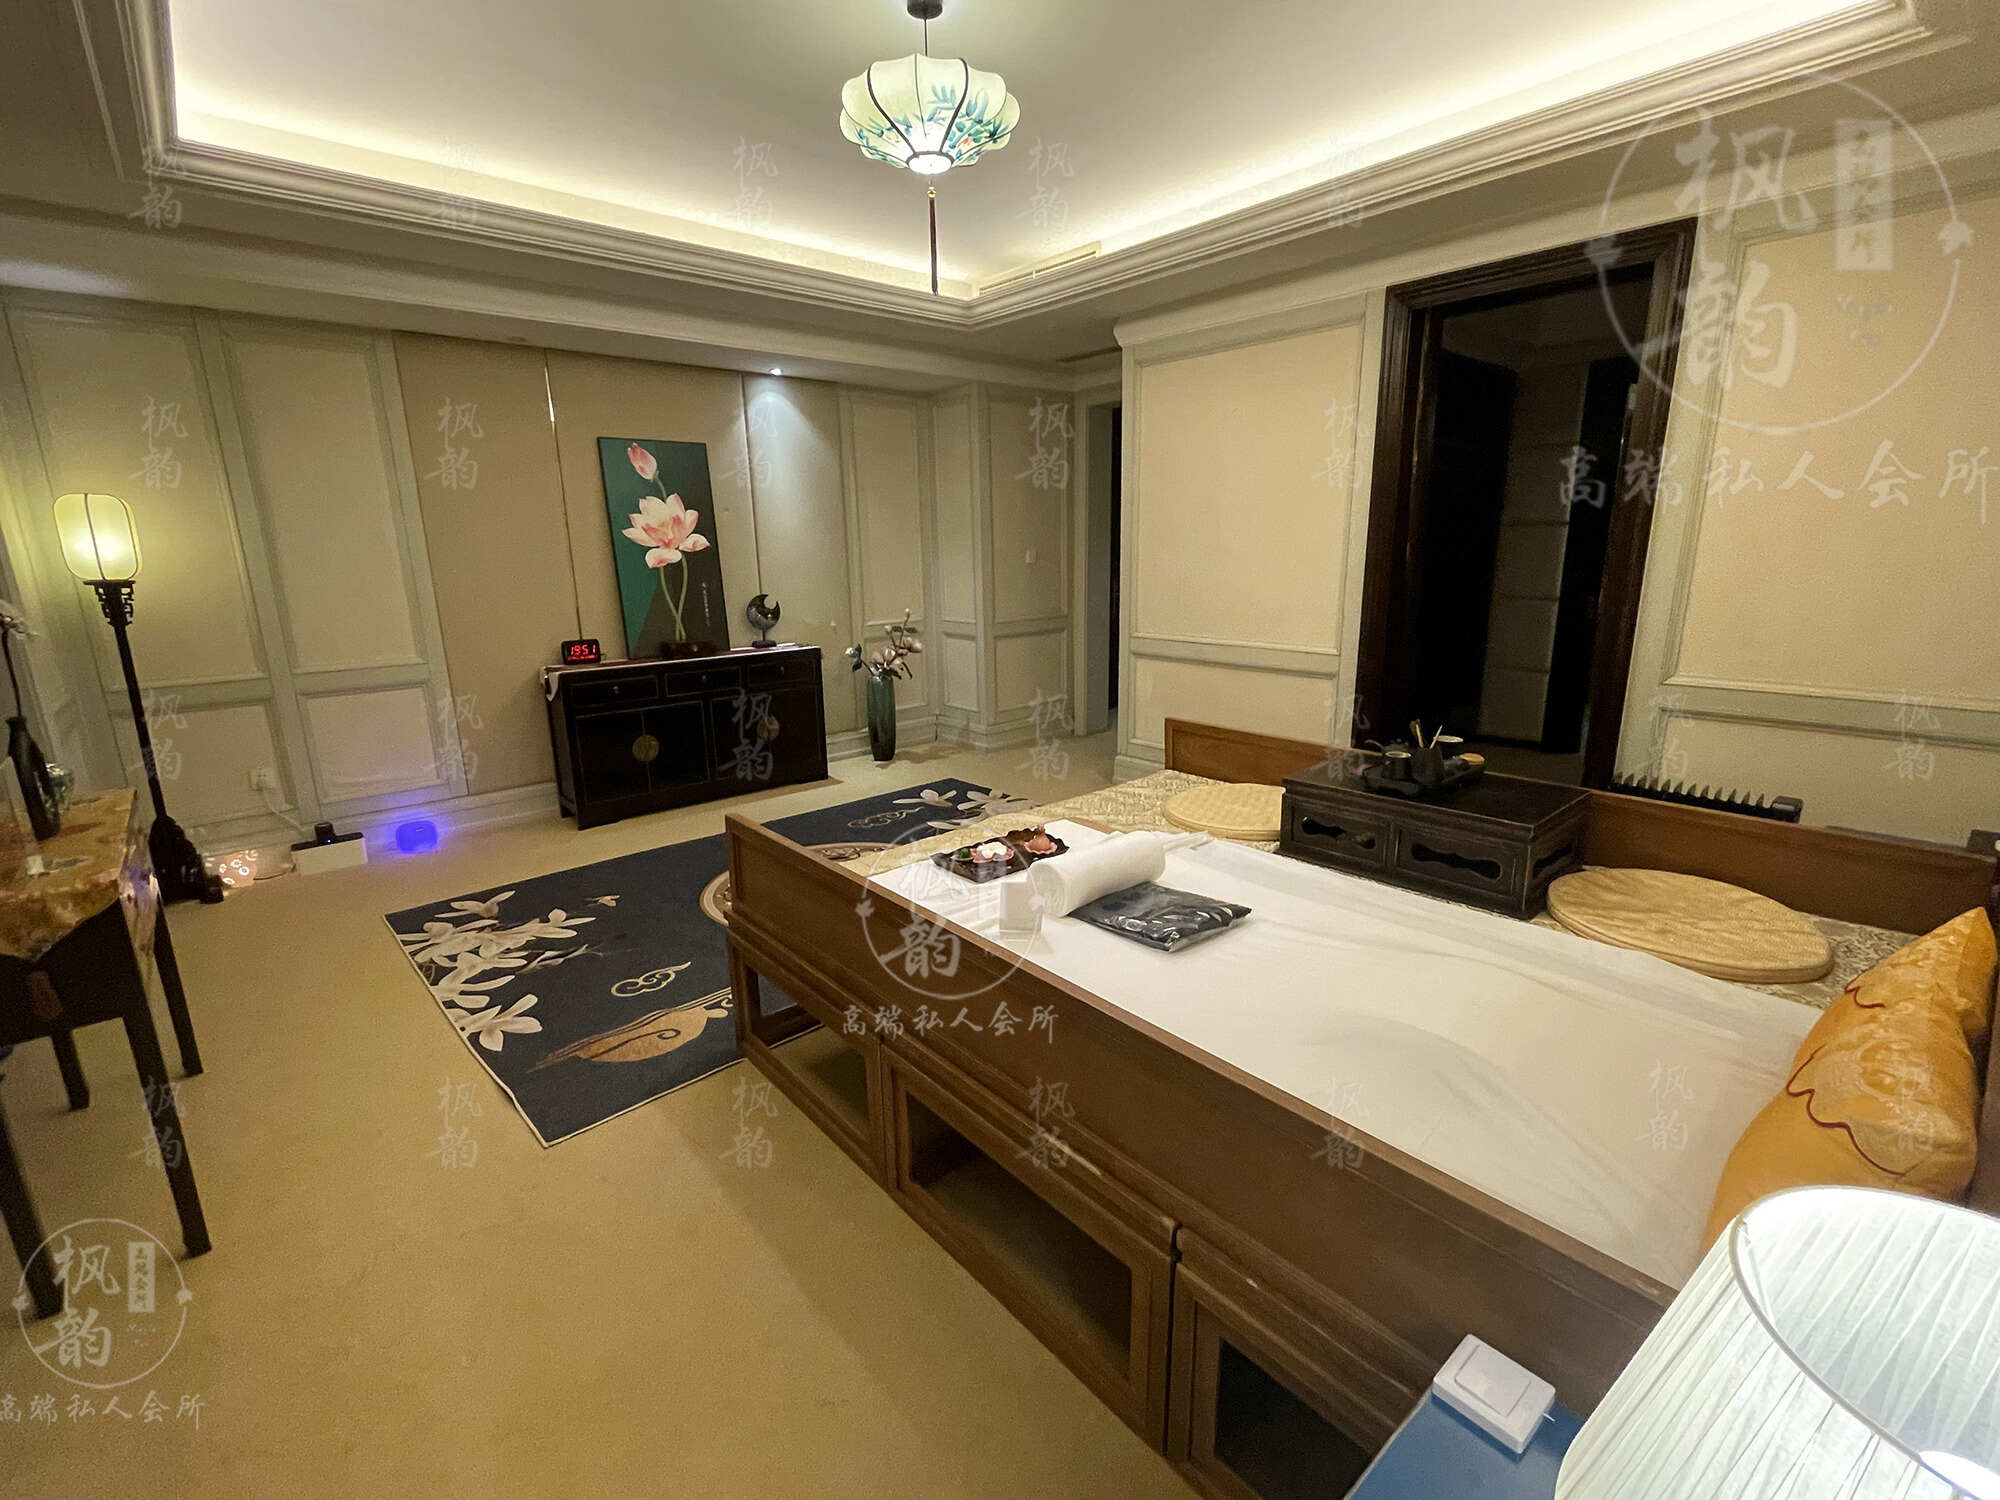 湛江天津渔阳鼓楼人气优选沐足会馆房间也很干净，舒适的spa体验